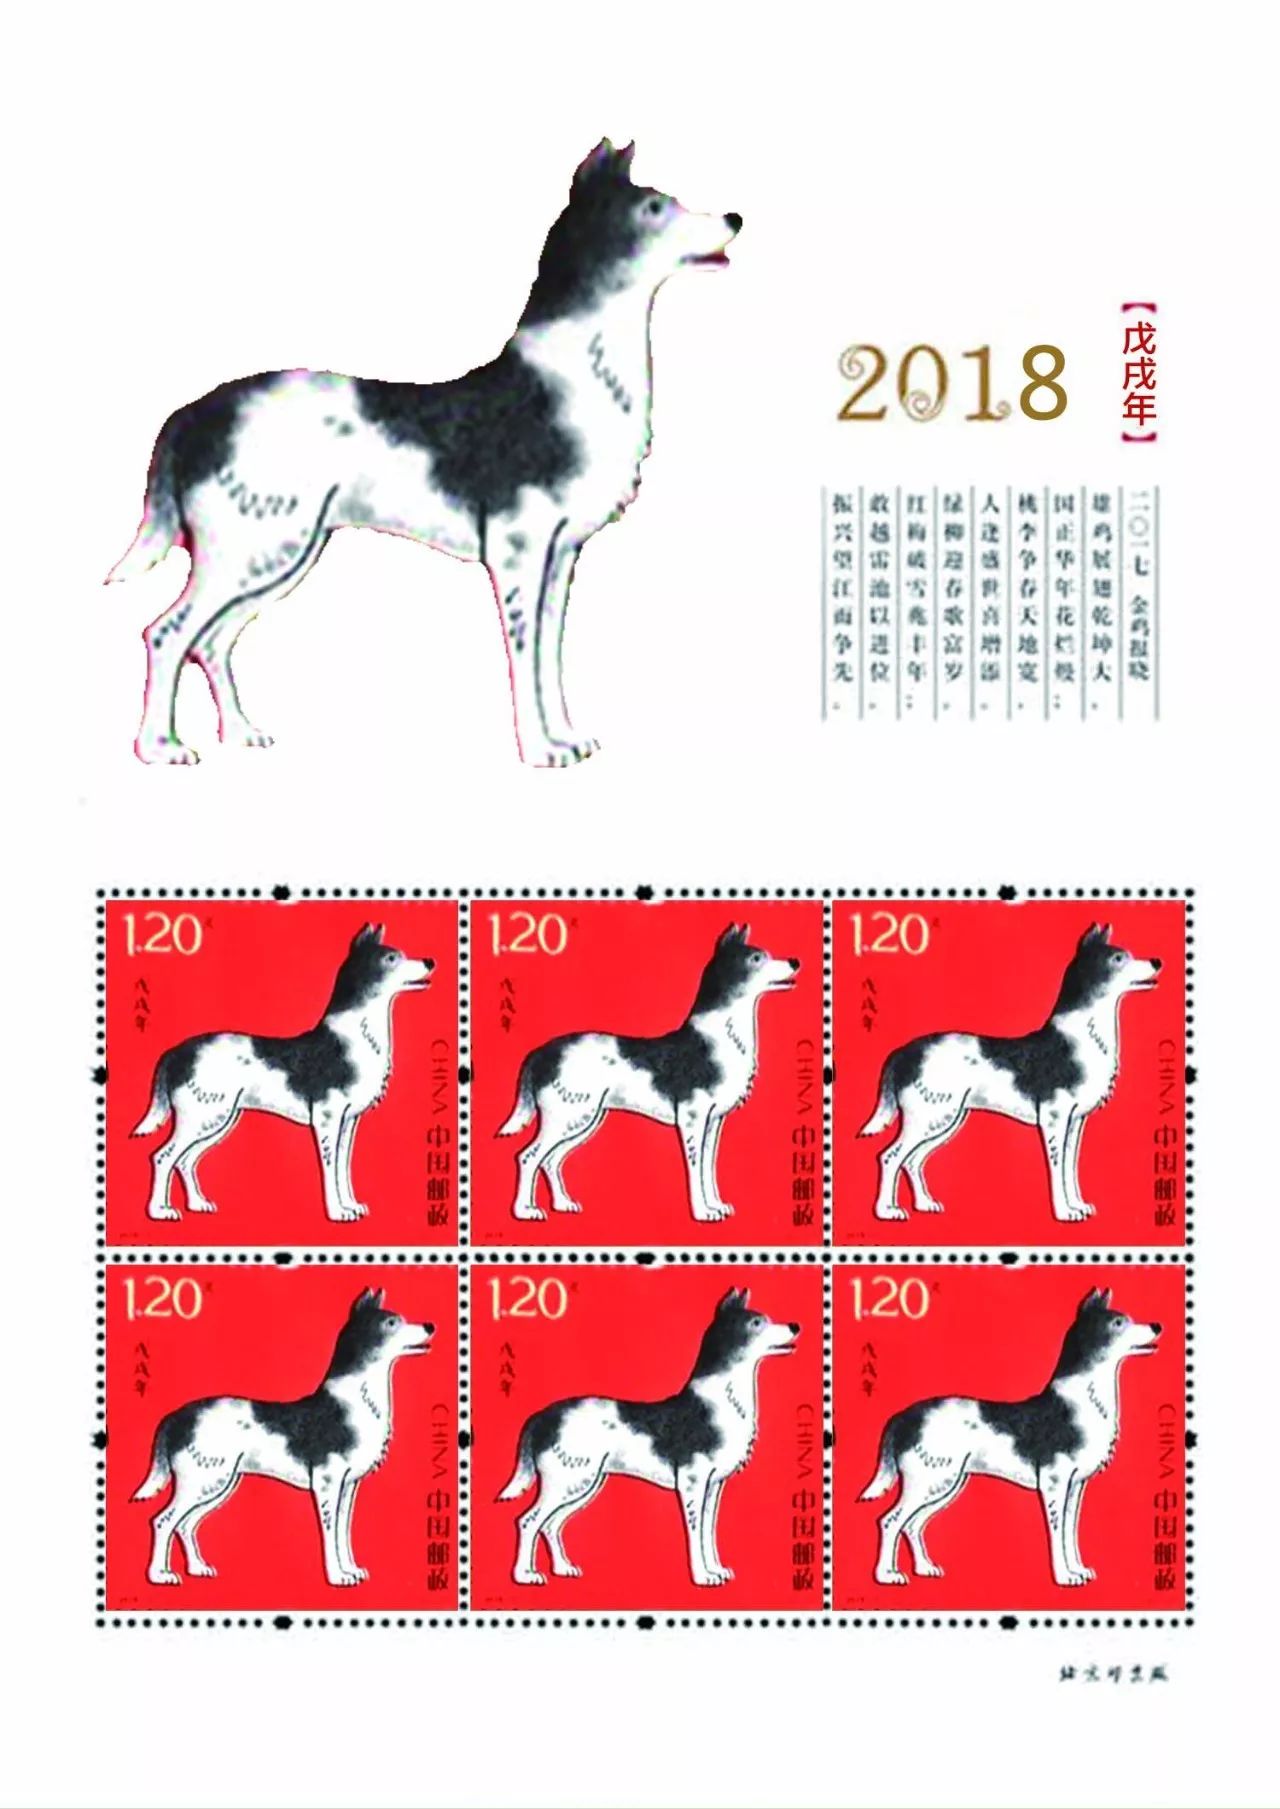 戊戌年(2018年發行的特種郵票)